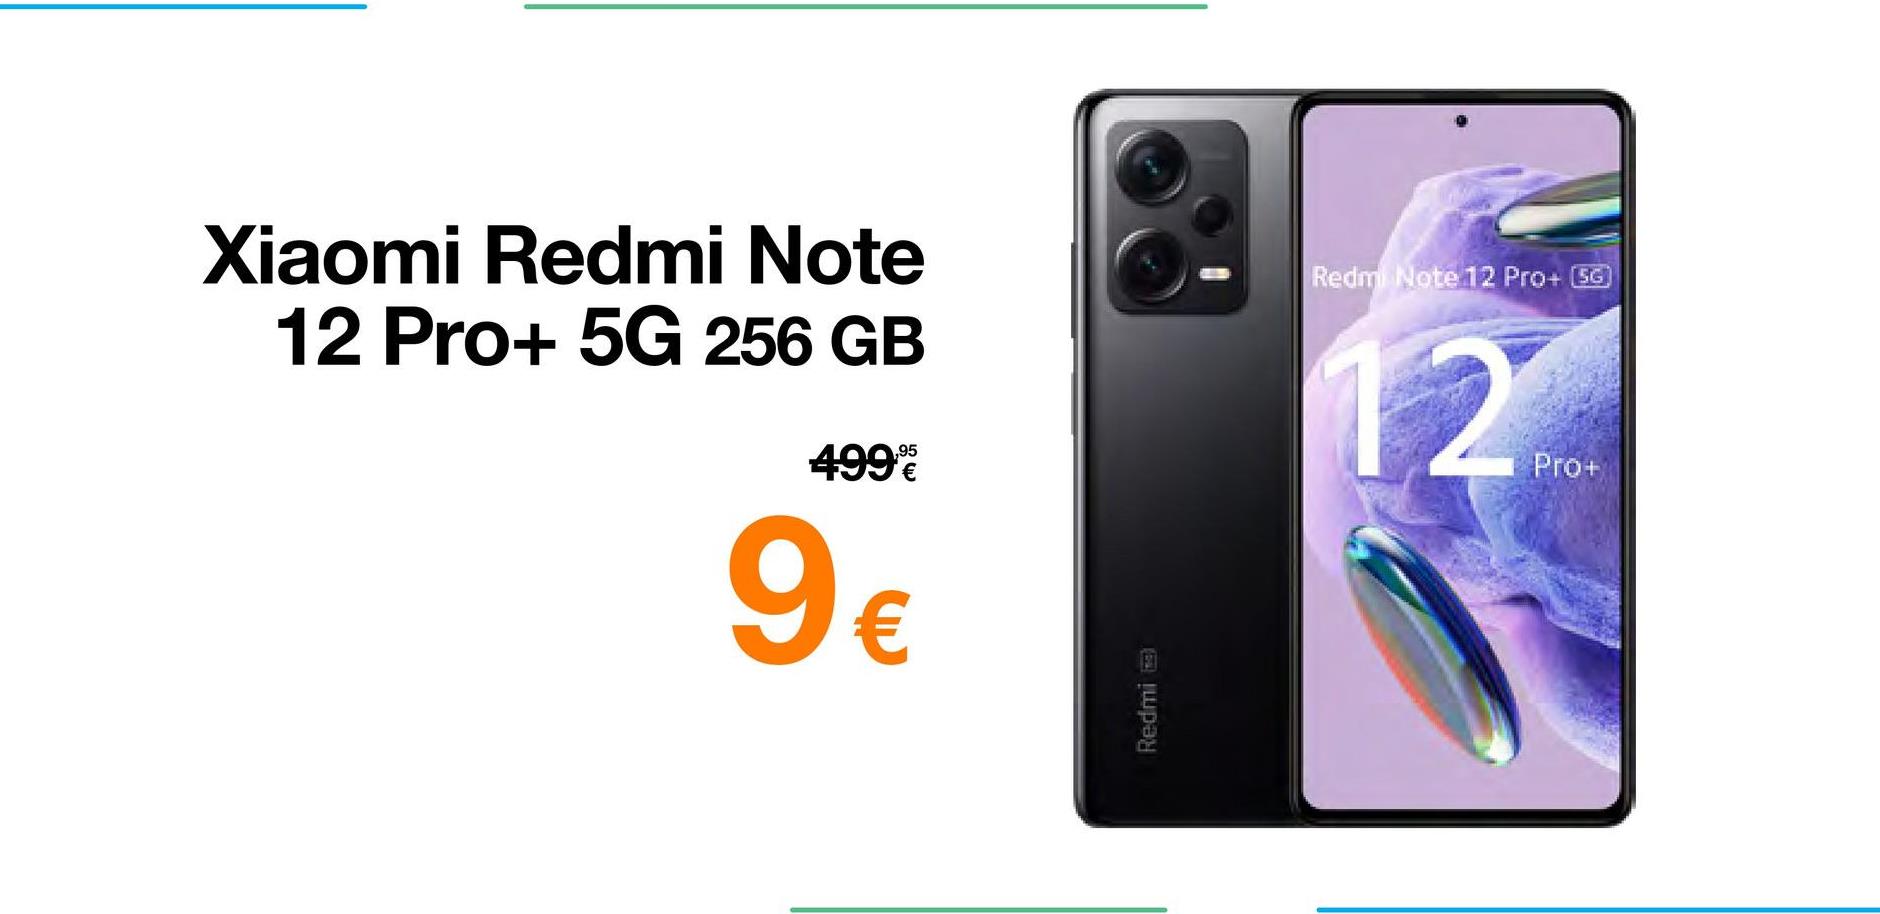 Xiaomi Redmi Note
12 Pro+ 5G 256 GB
4999
9€
Redmi
Redmi Note 12 Pro+ (SG)
12
Pro+